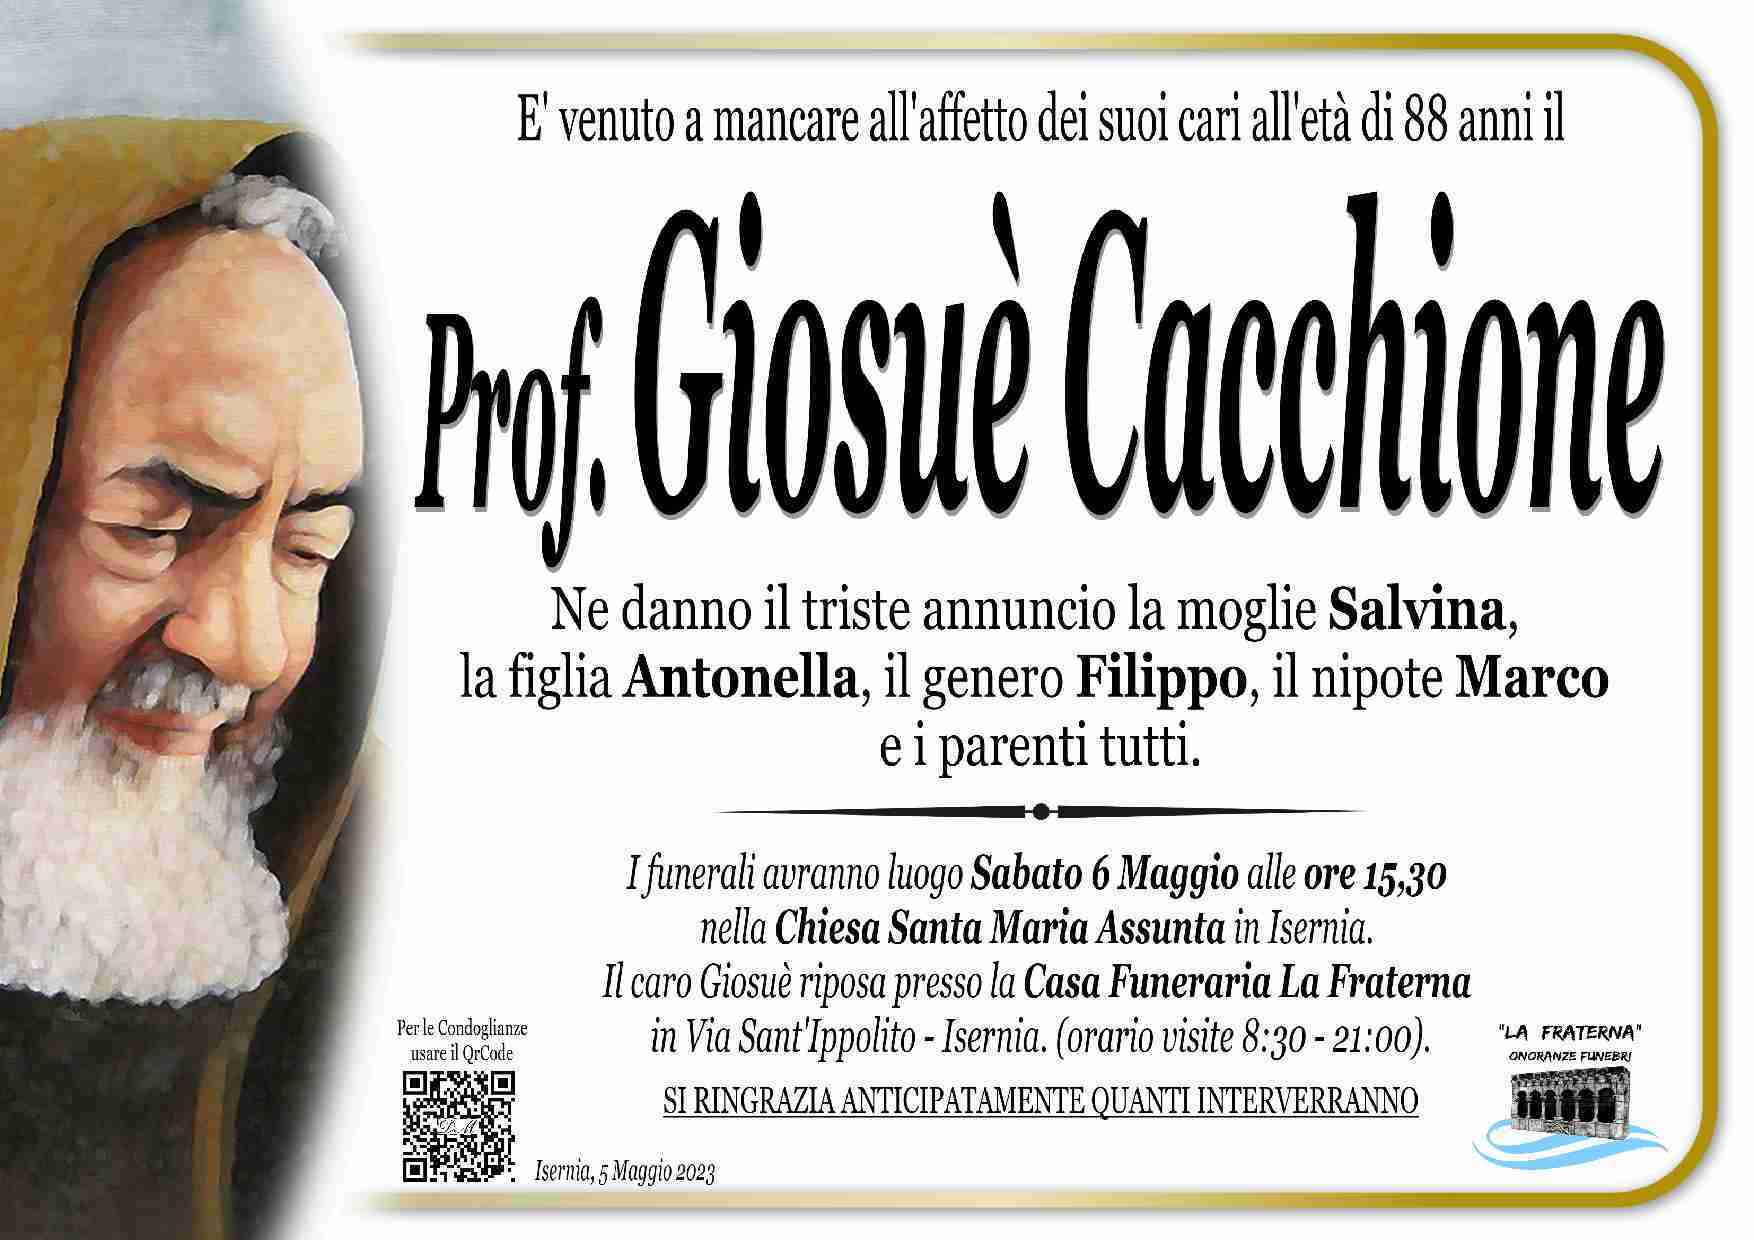 Giosuè Cacchione